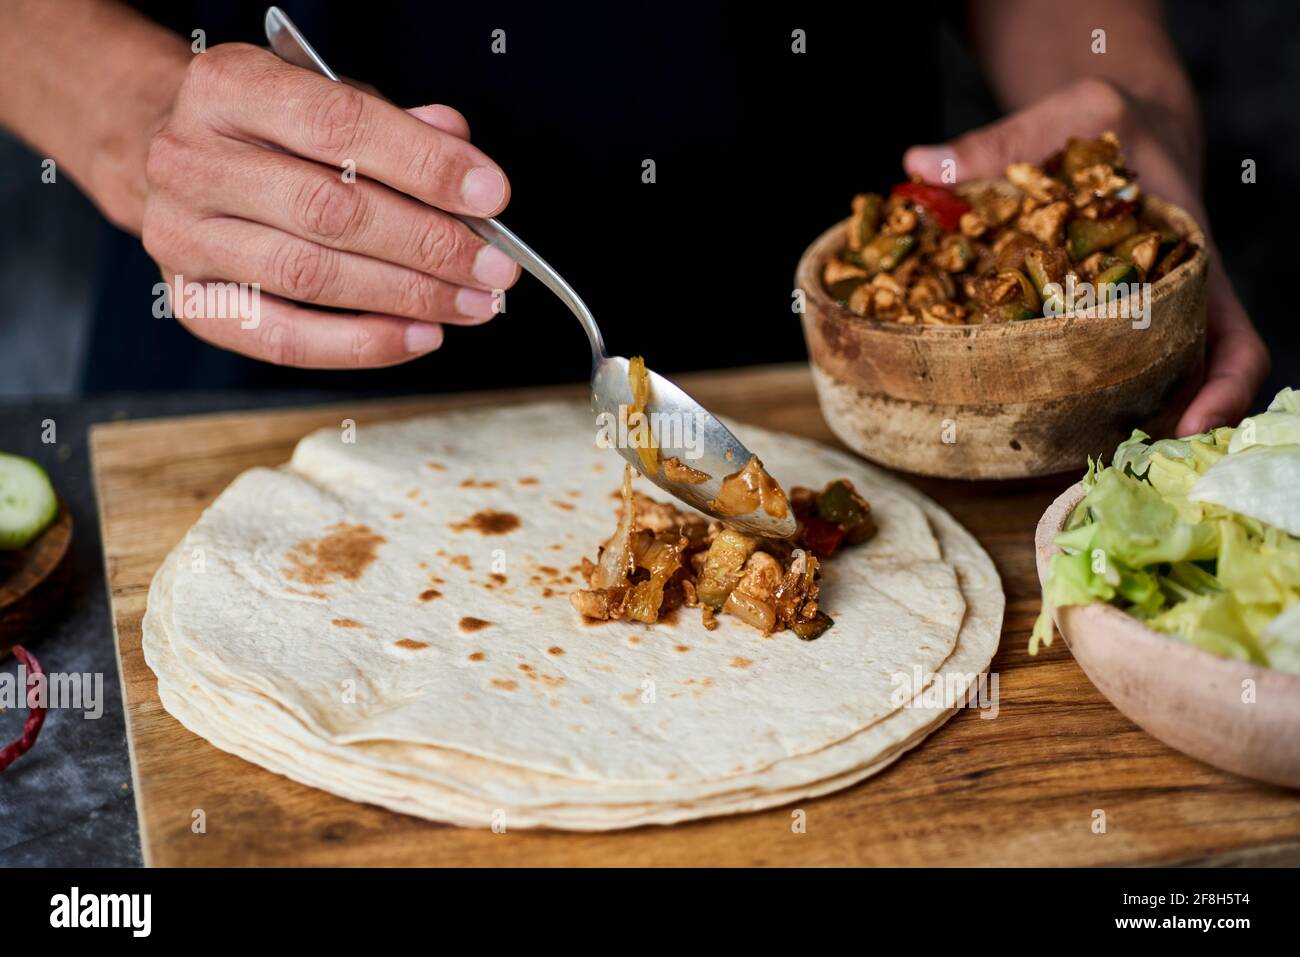 Ein junger Kaukasier füllt ein Durum oder einen Burrito mit Hühnerfleisch, das mit verschiedenen Gemüsesorten wie Zwiebeln oder rotem und grünem Pfeffer zubereitet wird Stockfoto